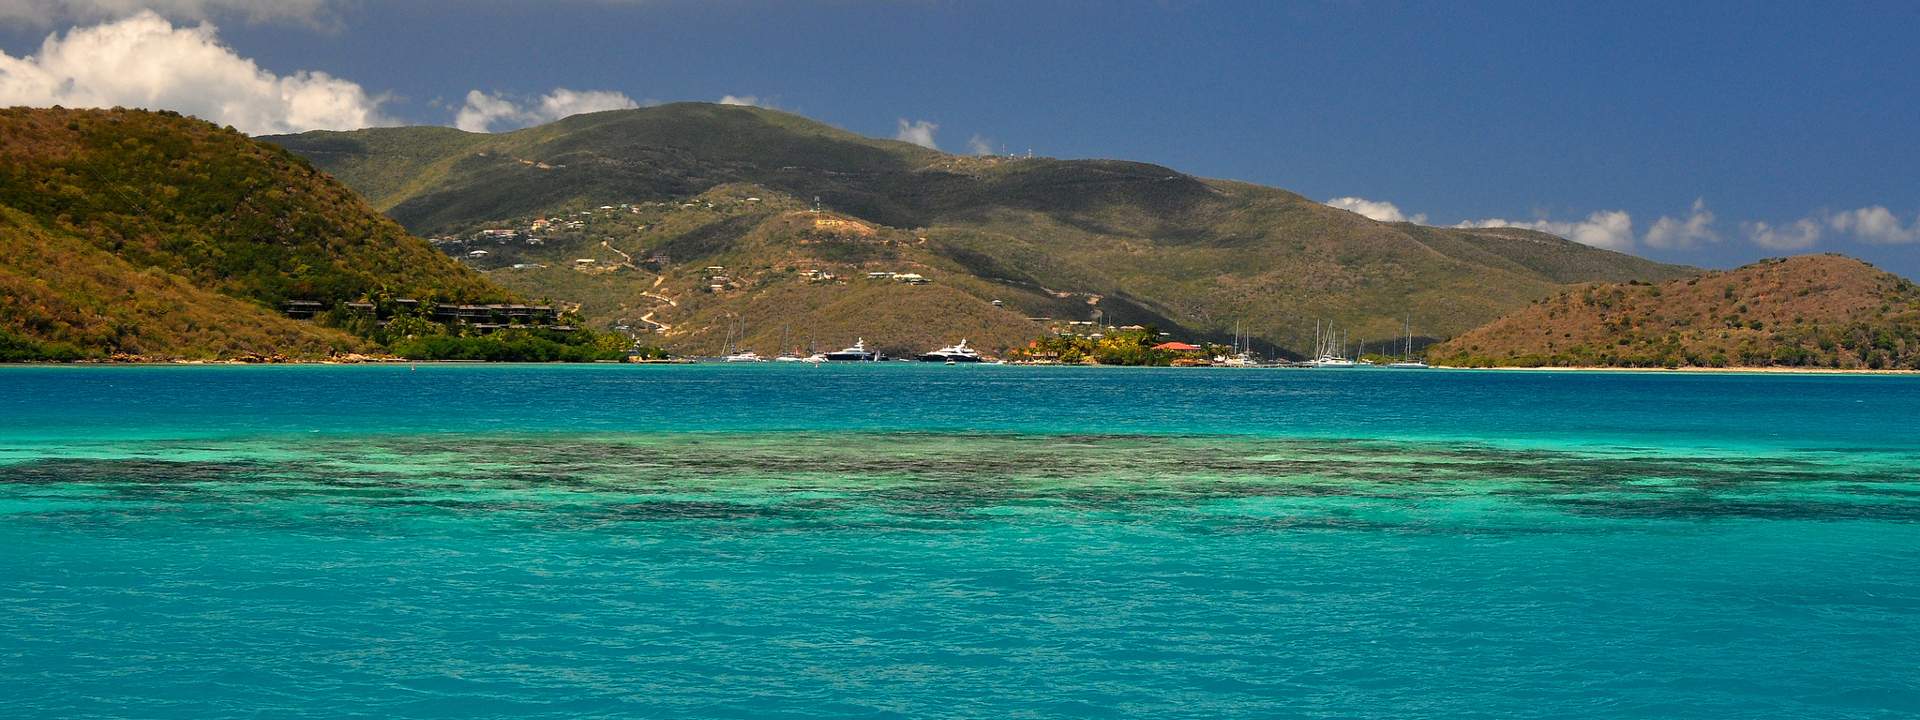 Explora el archipiélago de las Islas Vírgenes en catamarán de lujo